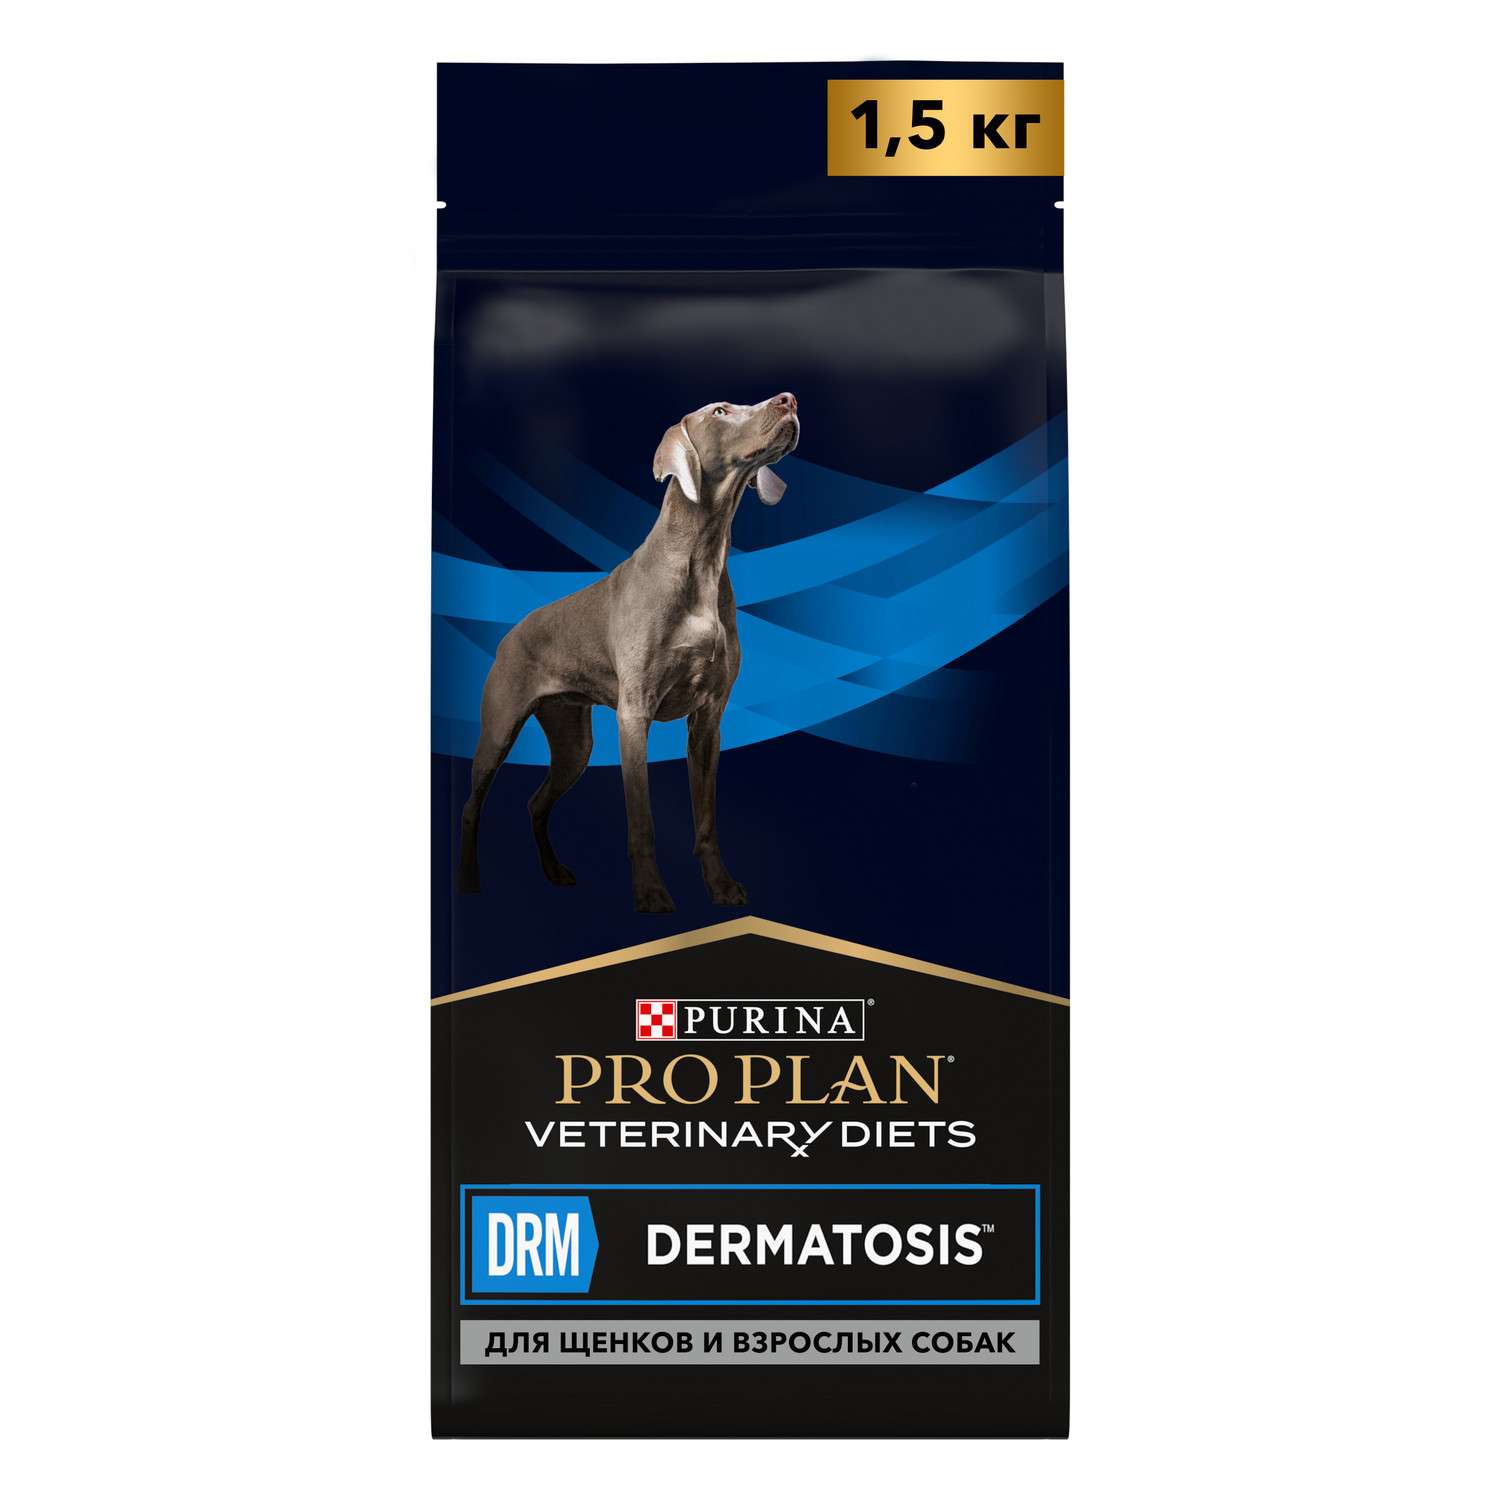 Корм для собак и щенков Purina Pro Plan Veterinary diets DRM Dermatosis для поддержания здоровья кожи при дерматозах и выпадении шерсти 1.5кг - фото 1